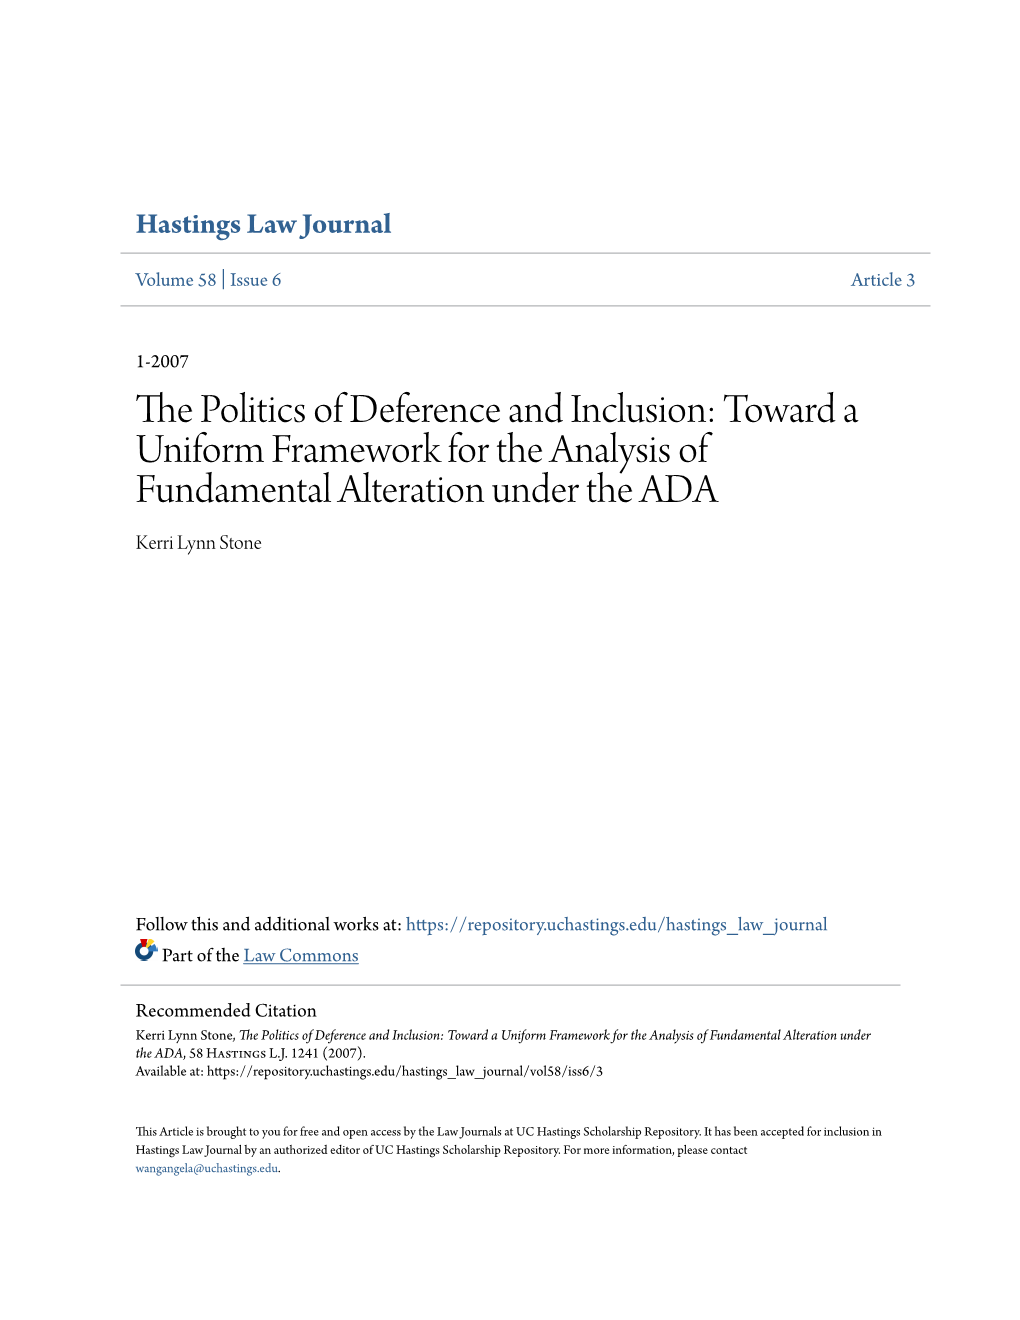 Toward a Uniform Framework for the Analysis of Fundamental Alteration Under the ADA Kerri Lynn Stone